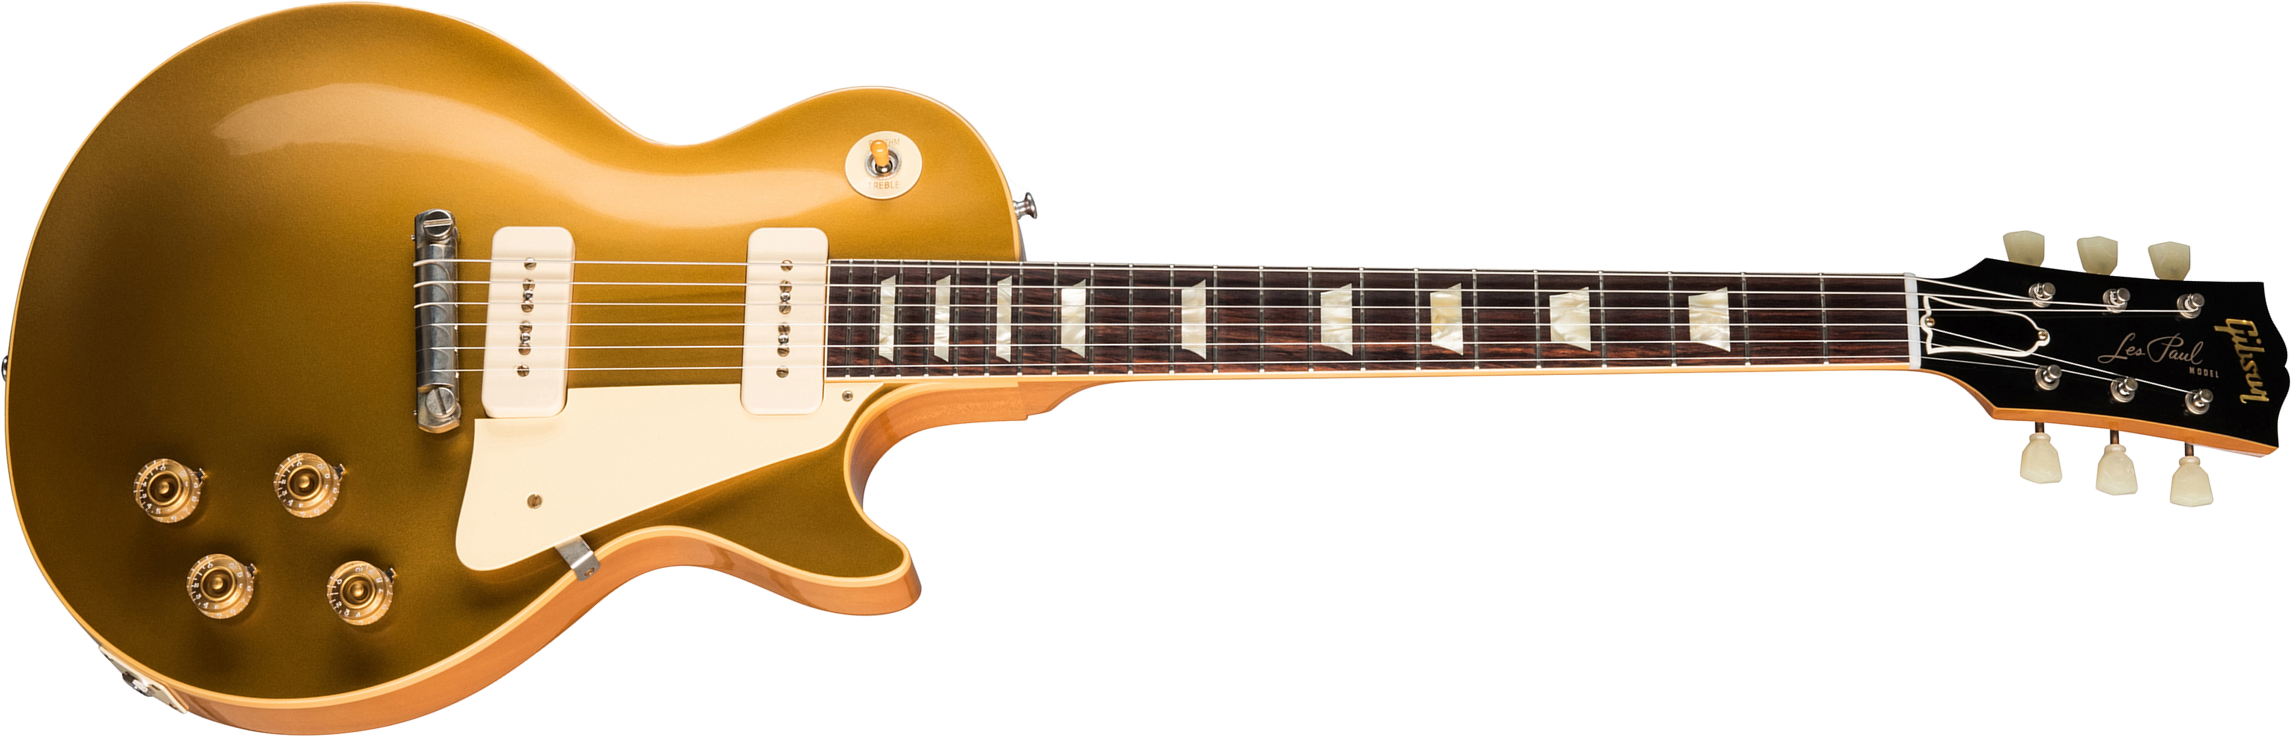 Gibson Custom Shop Les Paul Goldtop 1954 Reissue 2019 2p90 Ht Rw - Vos Double Gold - Single-Cut-E-Gitarre - Main picture